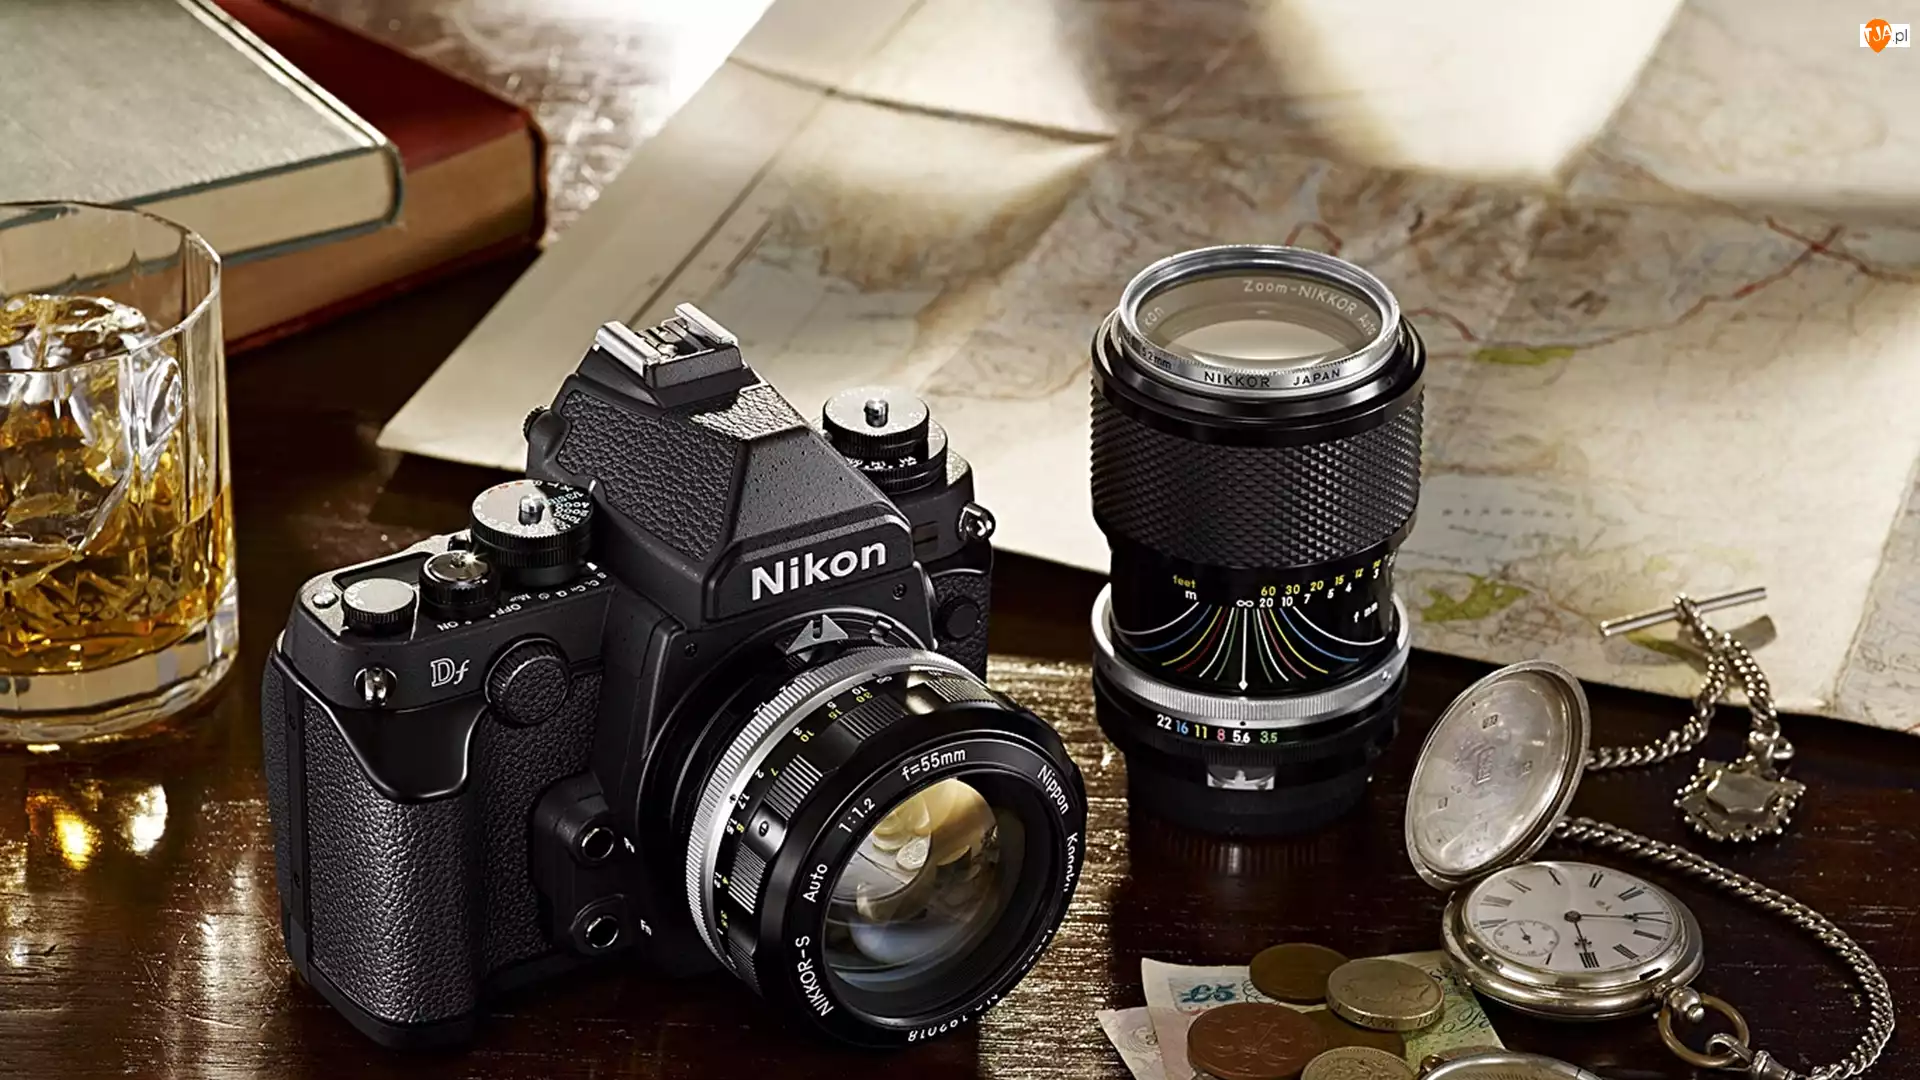 Nikon, Mapa, Kompozycja, Pieniądze, Aparat fotograficzny, Książki